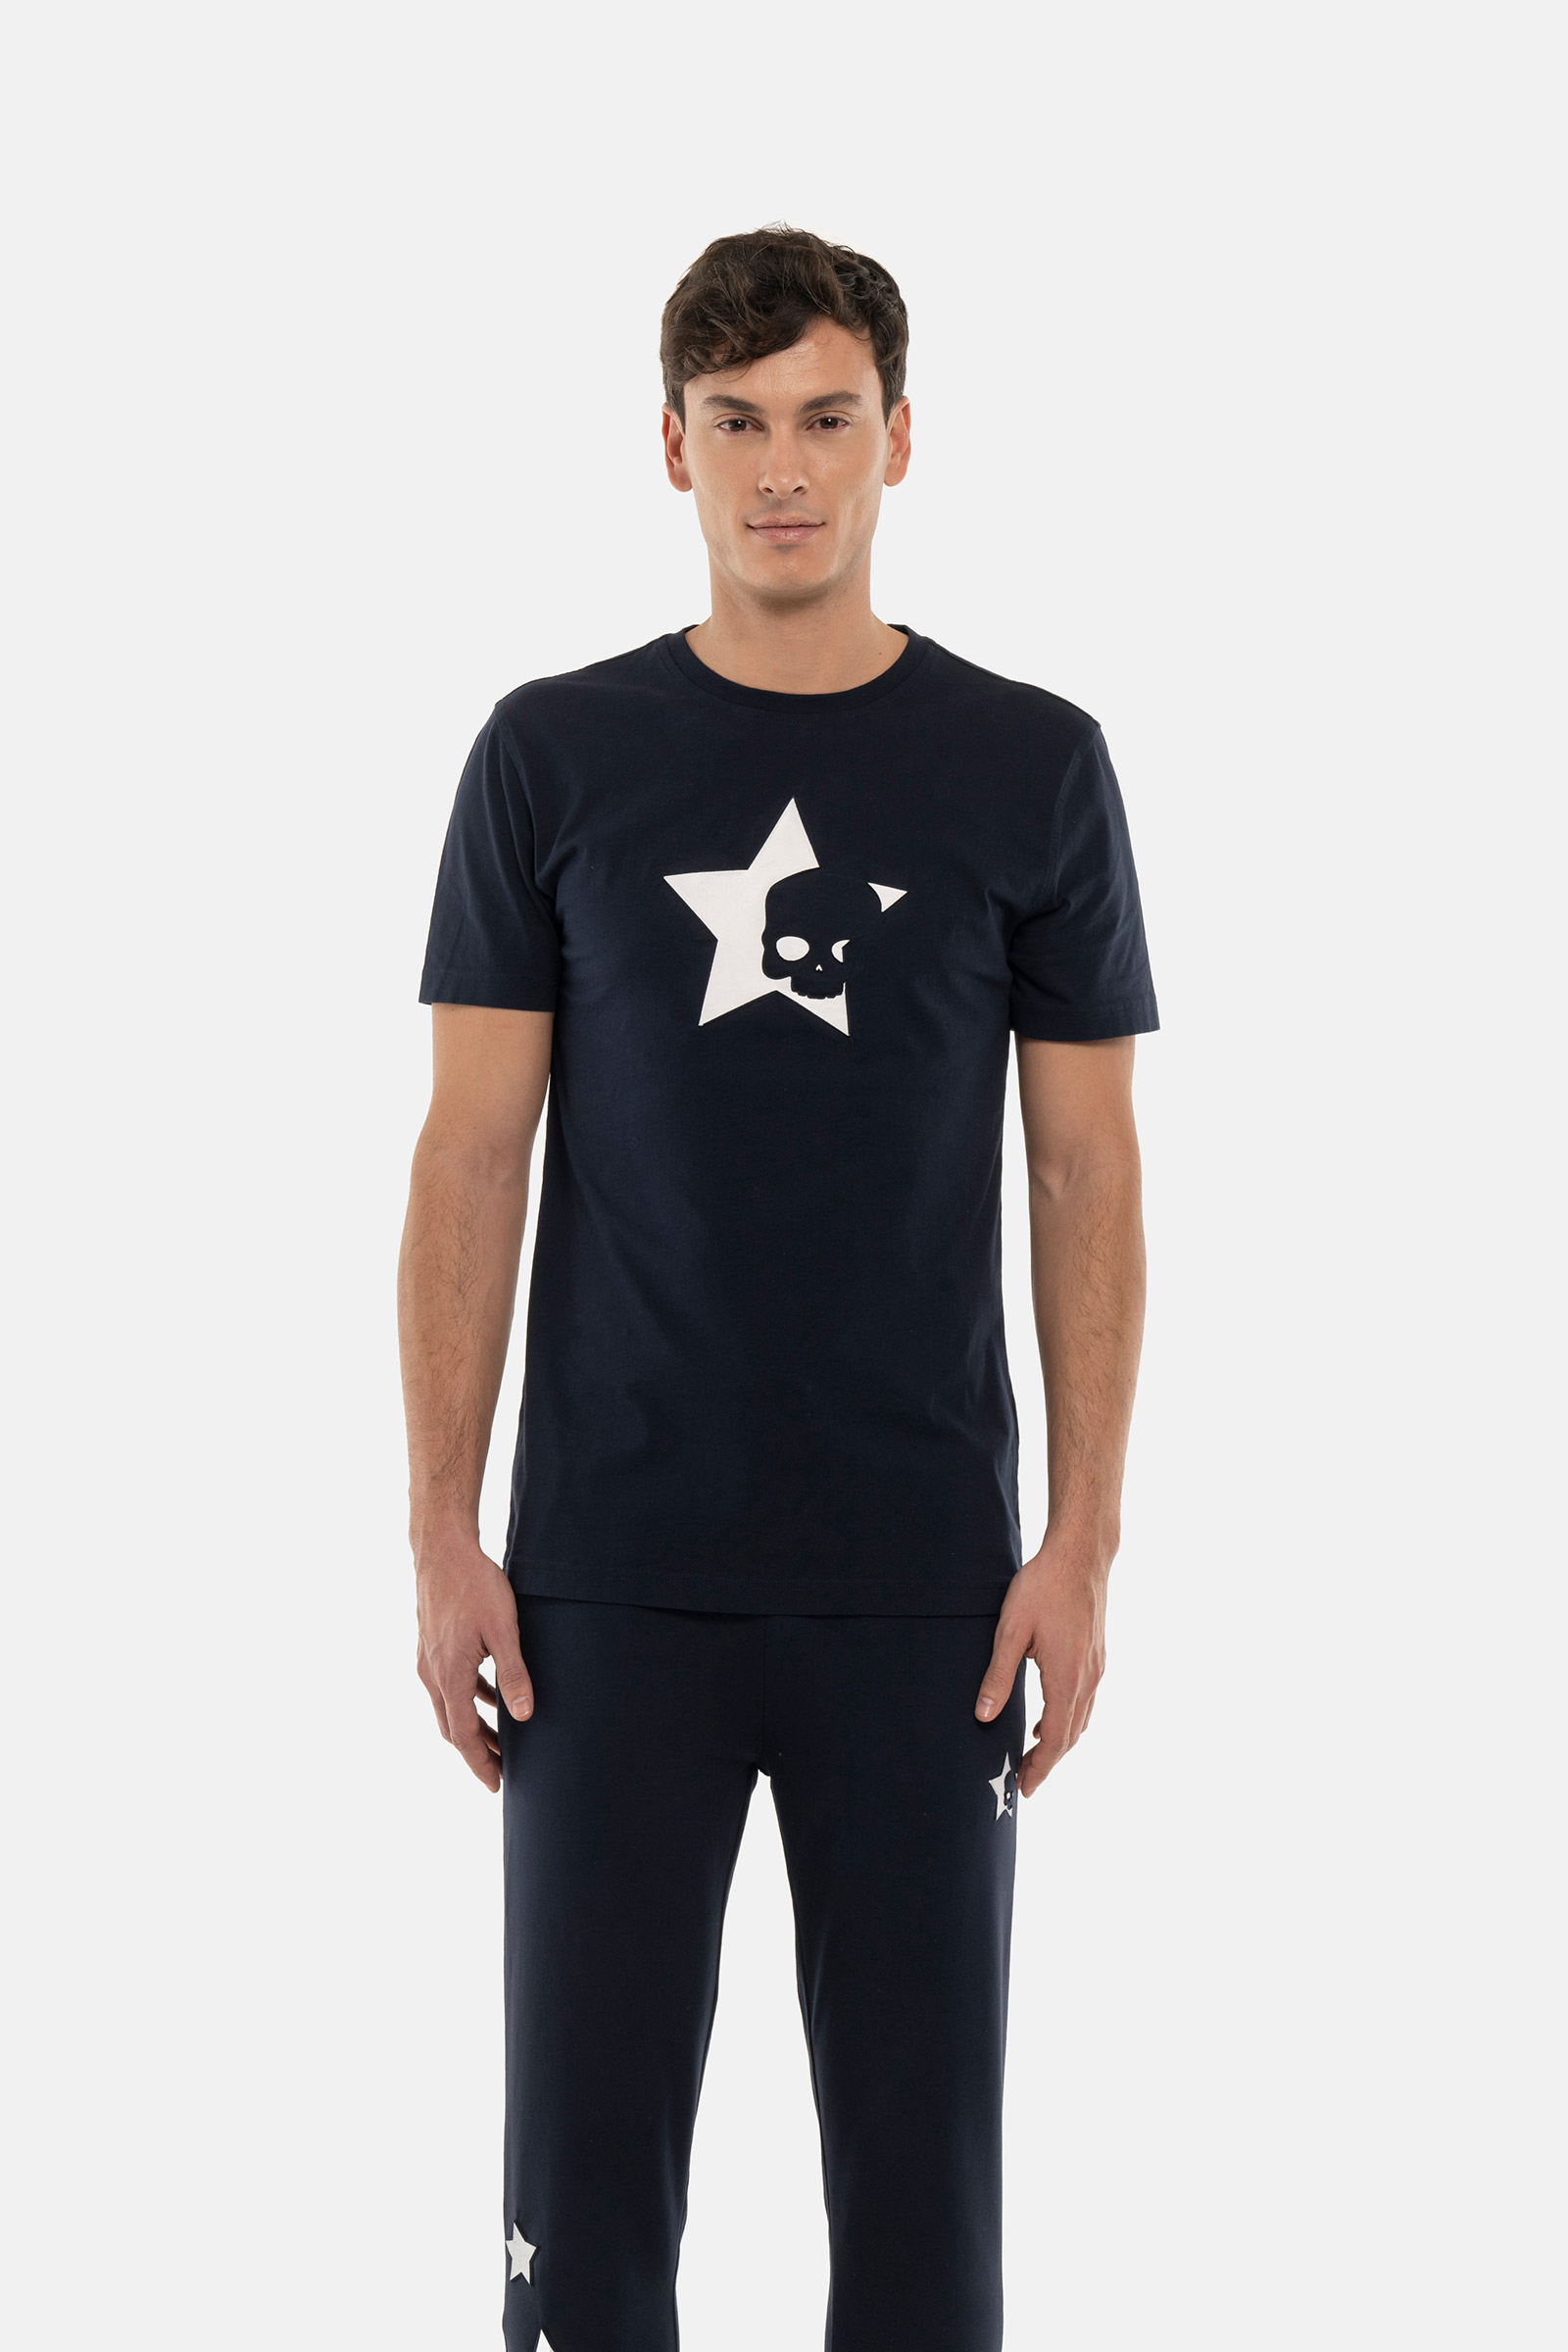 STARS TEE - BLUE - Hydrogen - Luxury Sportwear